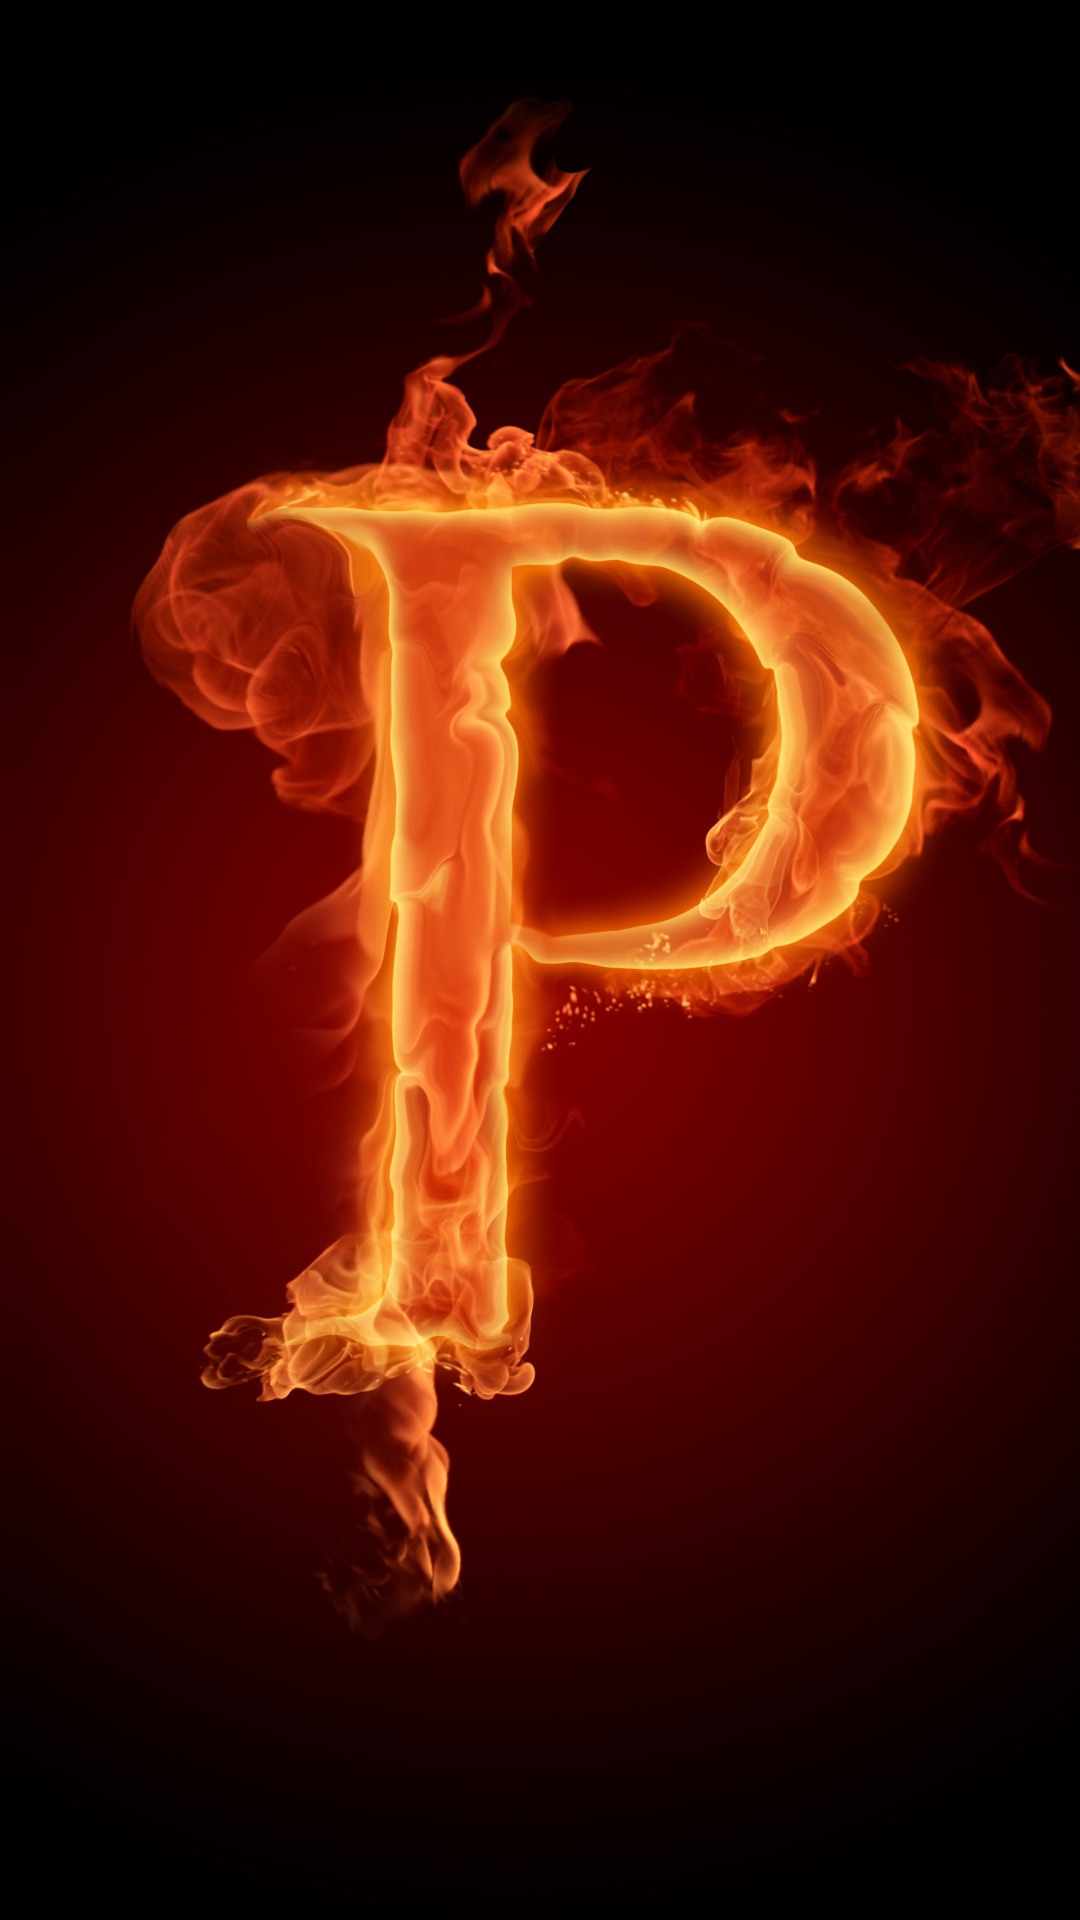 P Letter Design In Fire